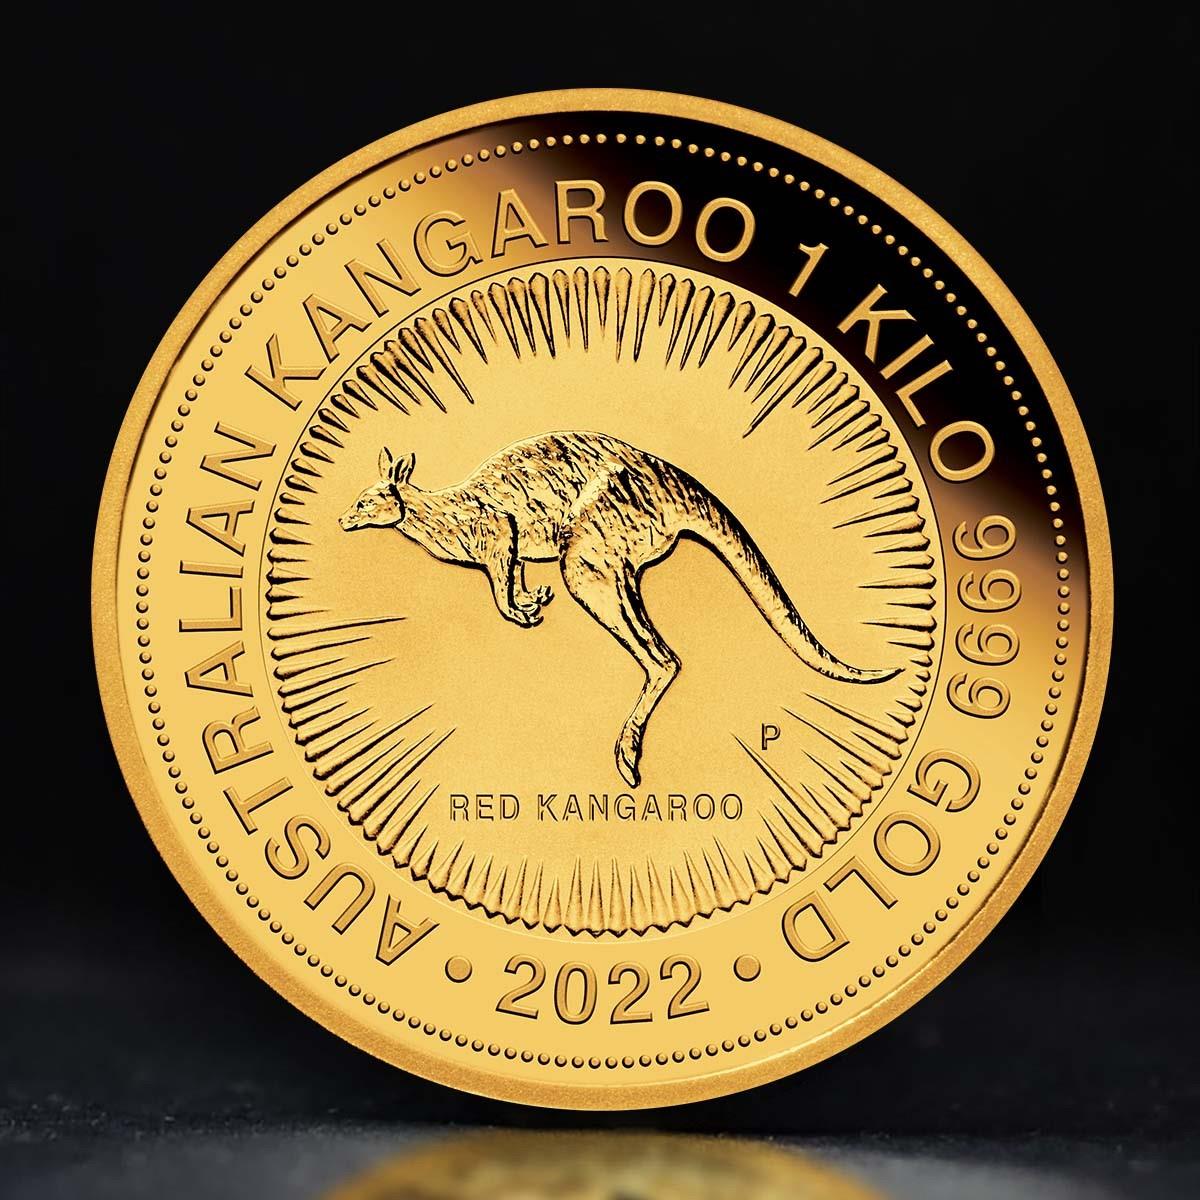 1 Kilo Gold Coin For Sale